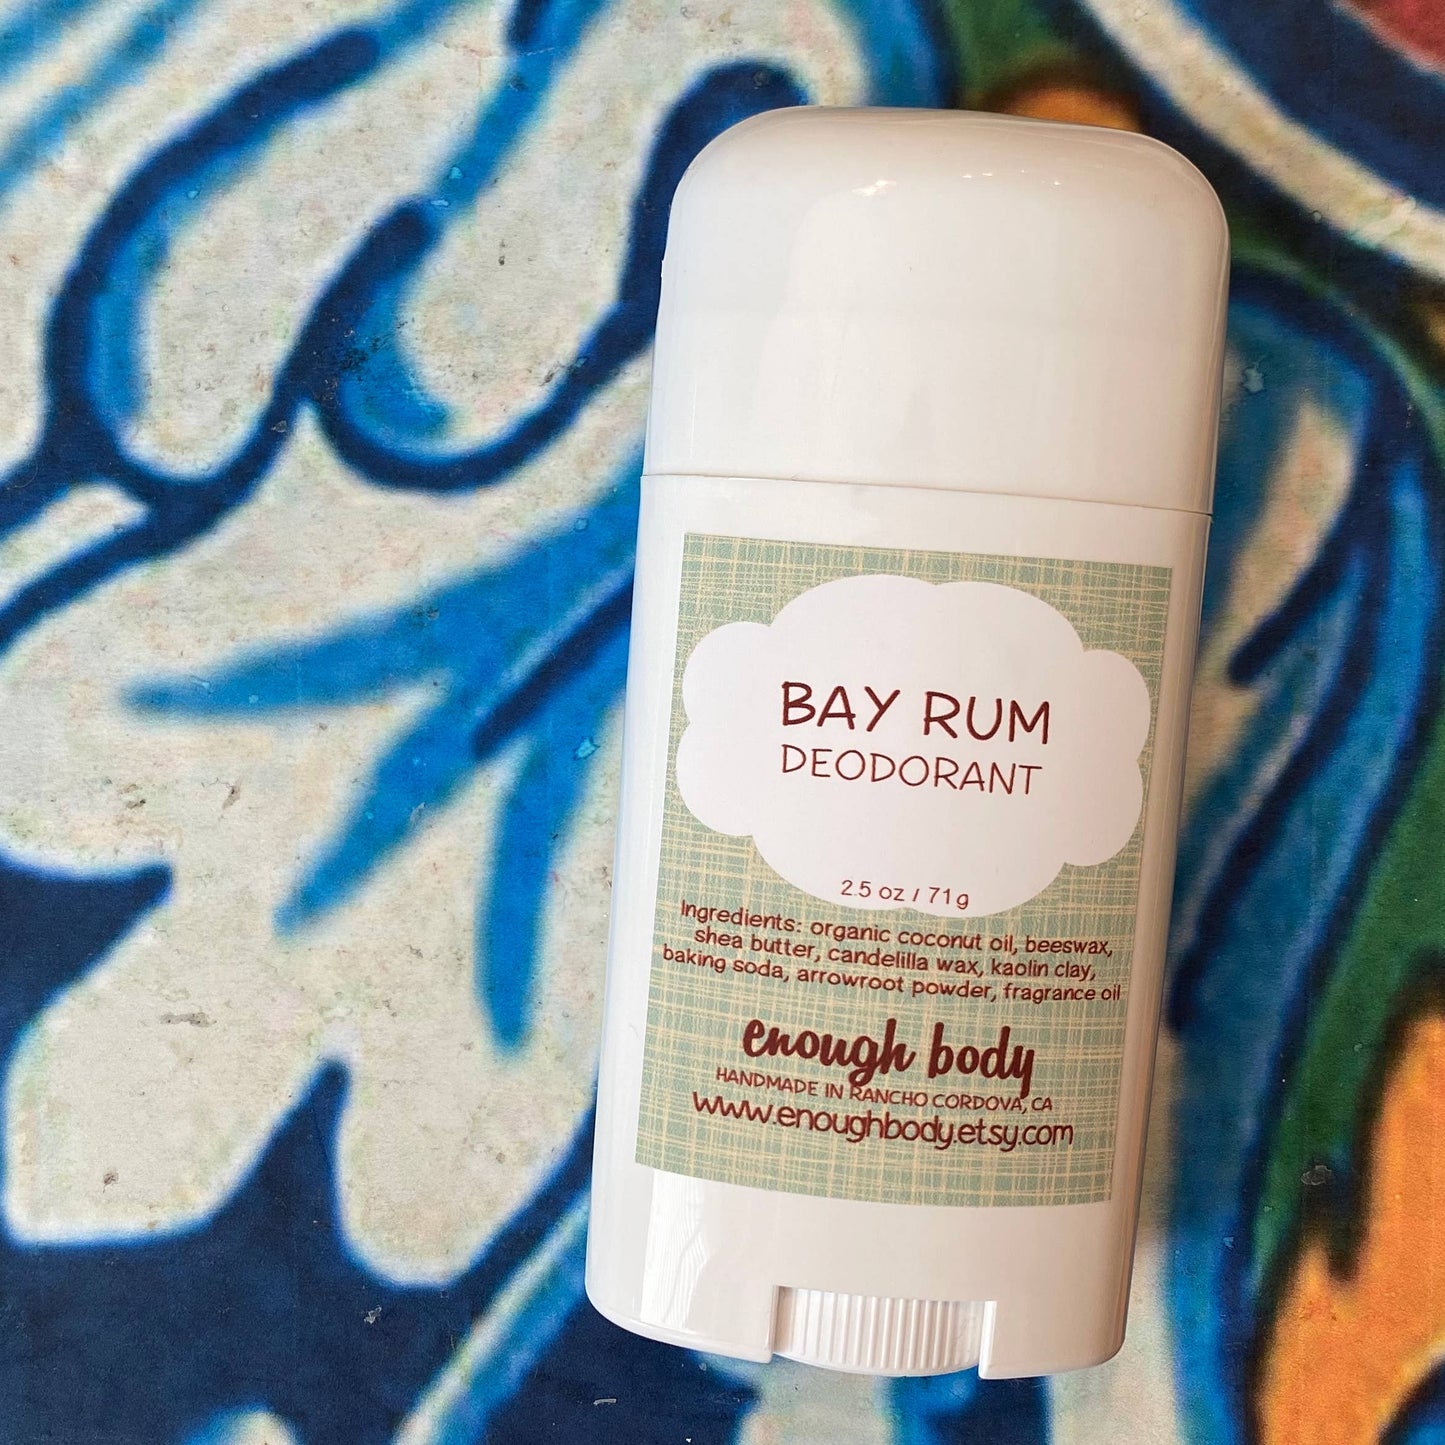 Enough Body - Desodorante en barra natural Bay Rum